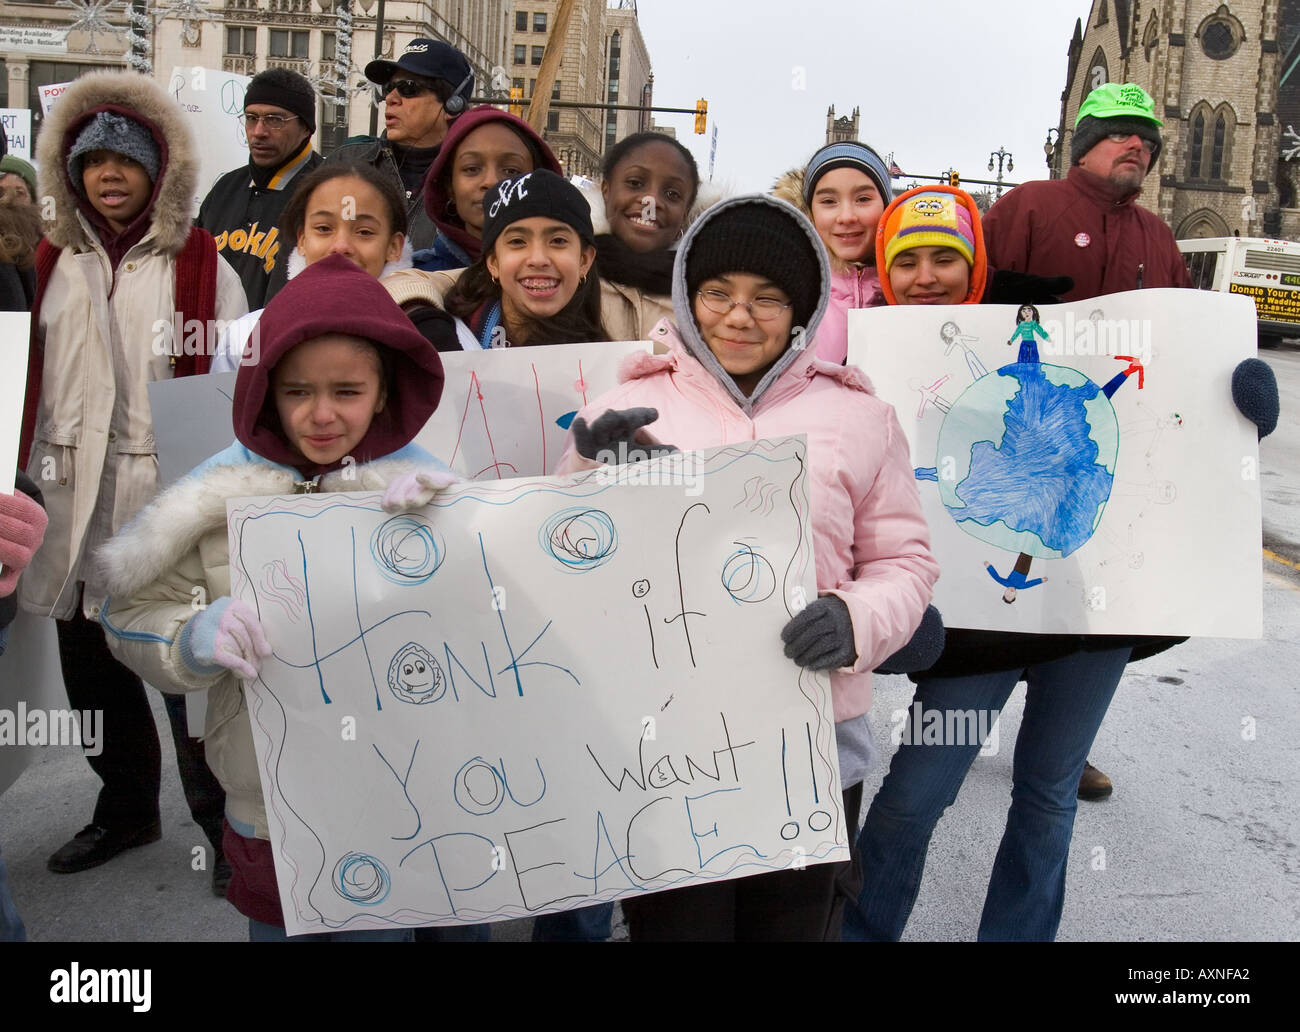 Les gens s'opposent à la guerre en Irak au cours de la journée Martin Luther King Jr à Detroit Banque D'Images